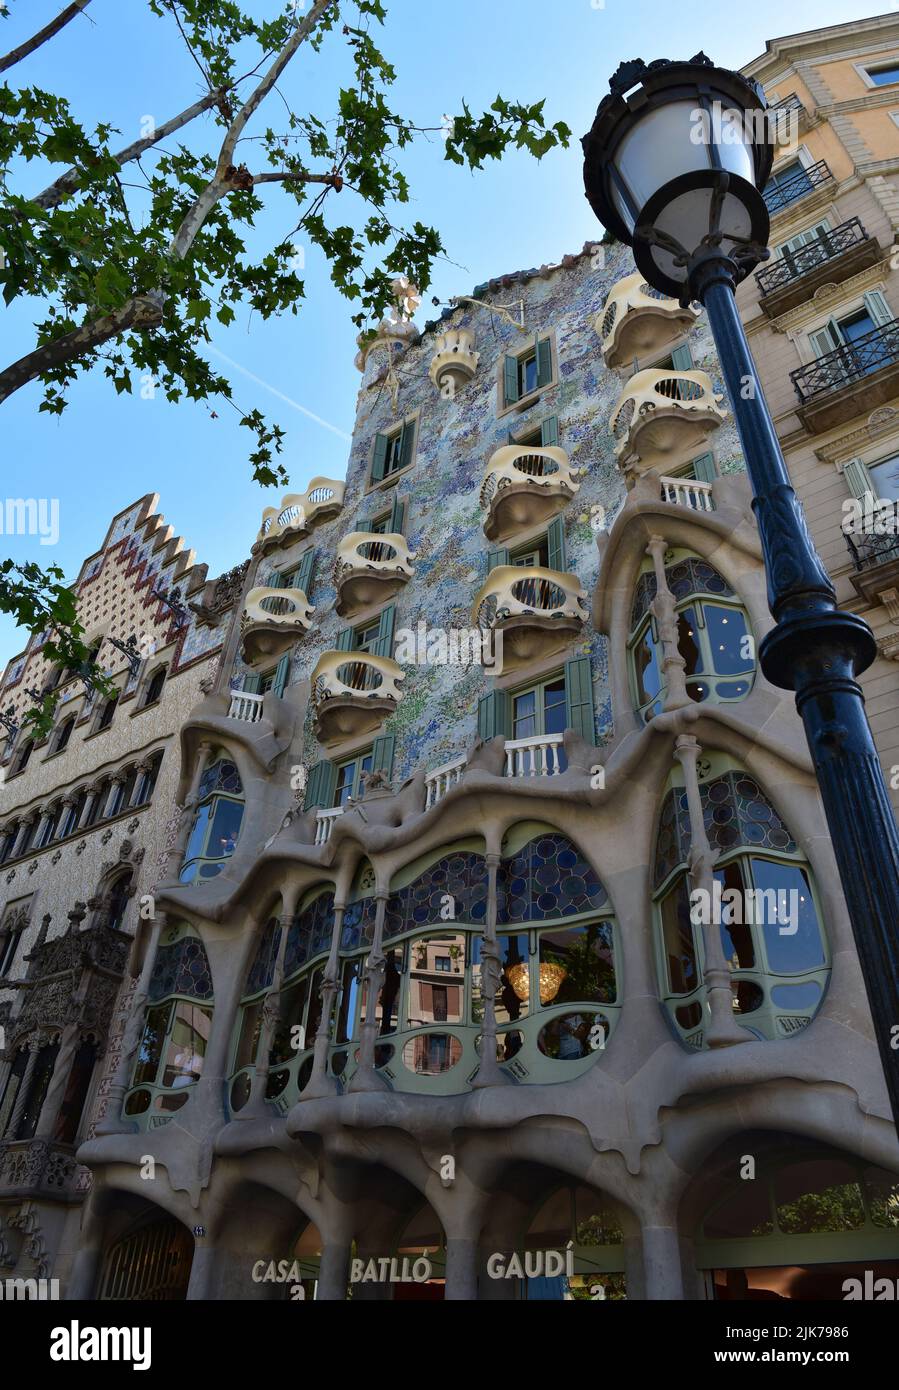 Das wunderschöne, seltsame Äußere der Casa Batlló, eines der schönsten Werke Antoni Gaudis, Passeig de Gràcia, Barcelona, Katalonien, Spanien. Stockfoto